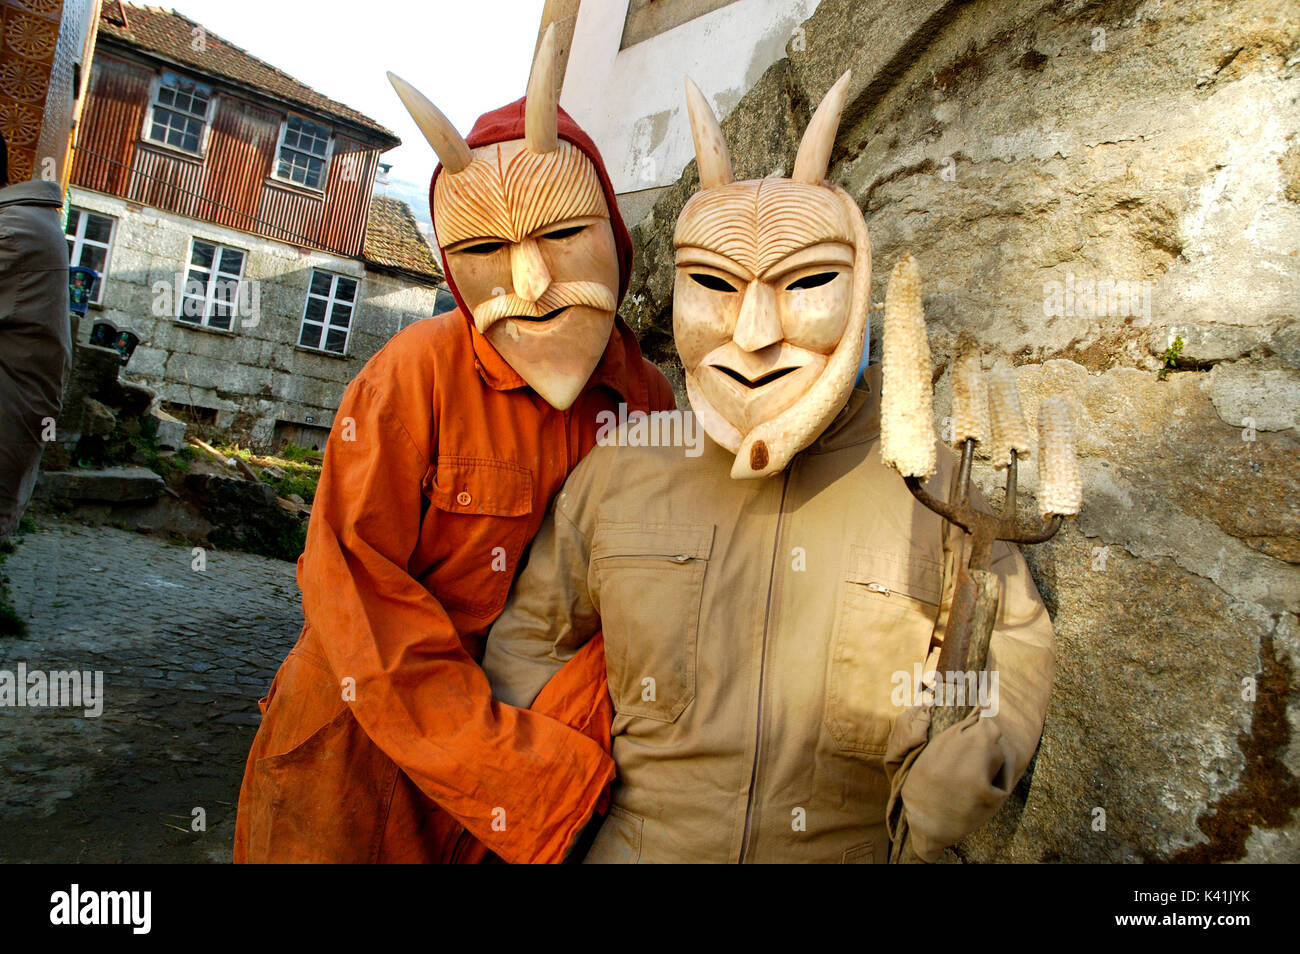 Les masques en bois traditionnels pendant le carnaval. Lazarim, Beira Alta,  Portugal Photo Stock - Alamy